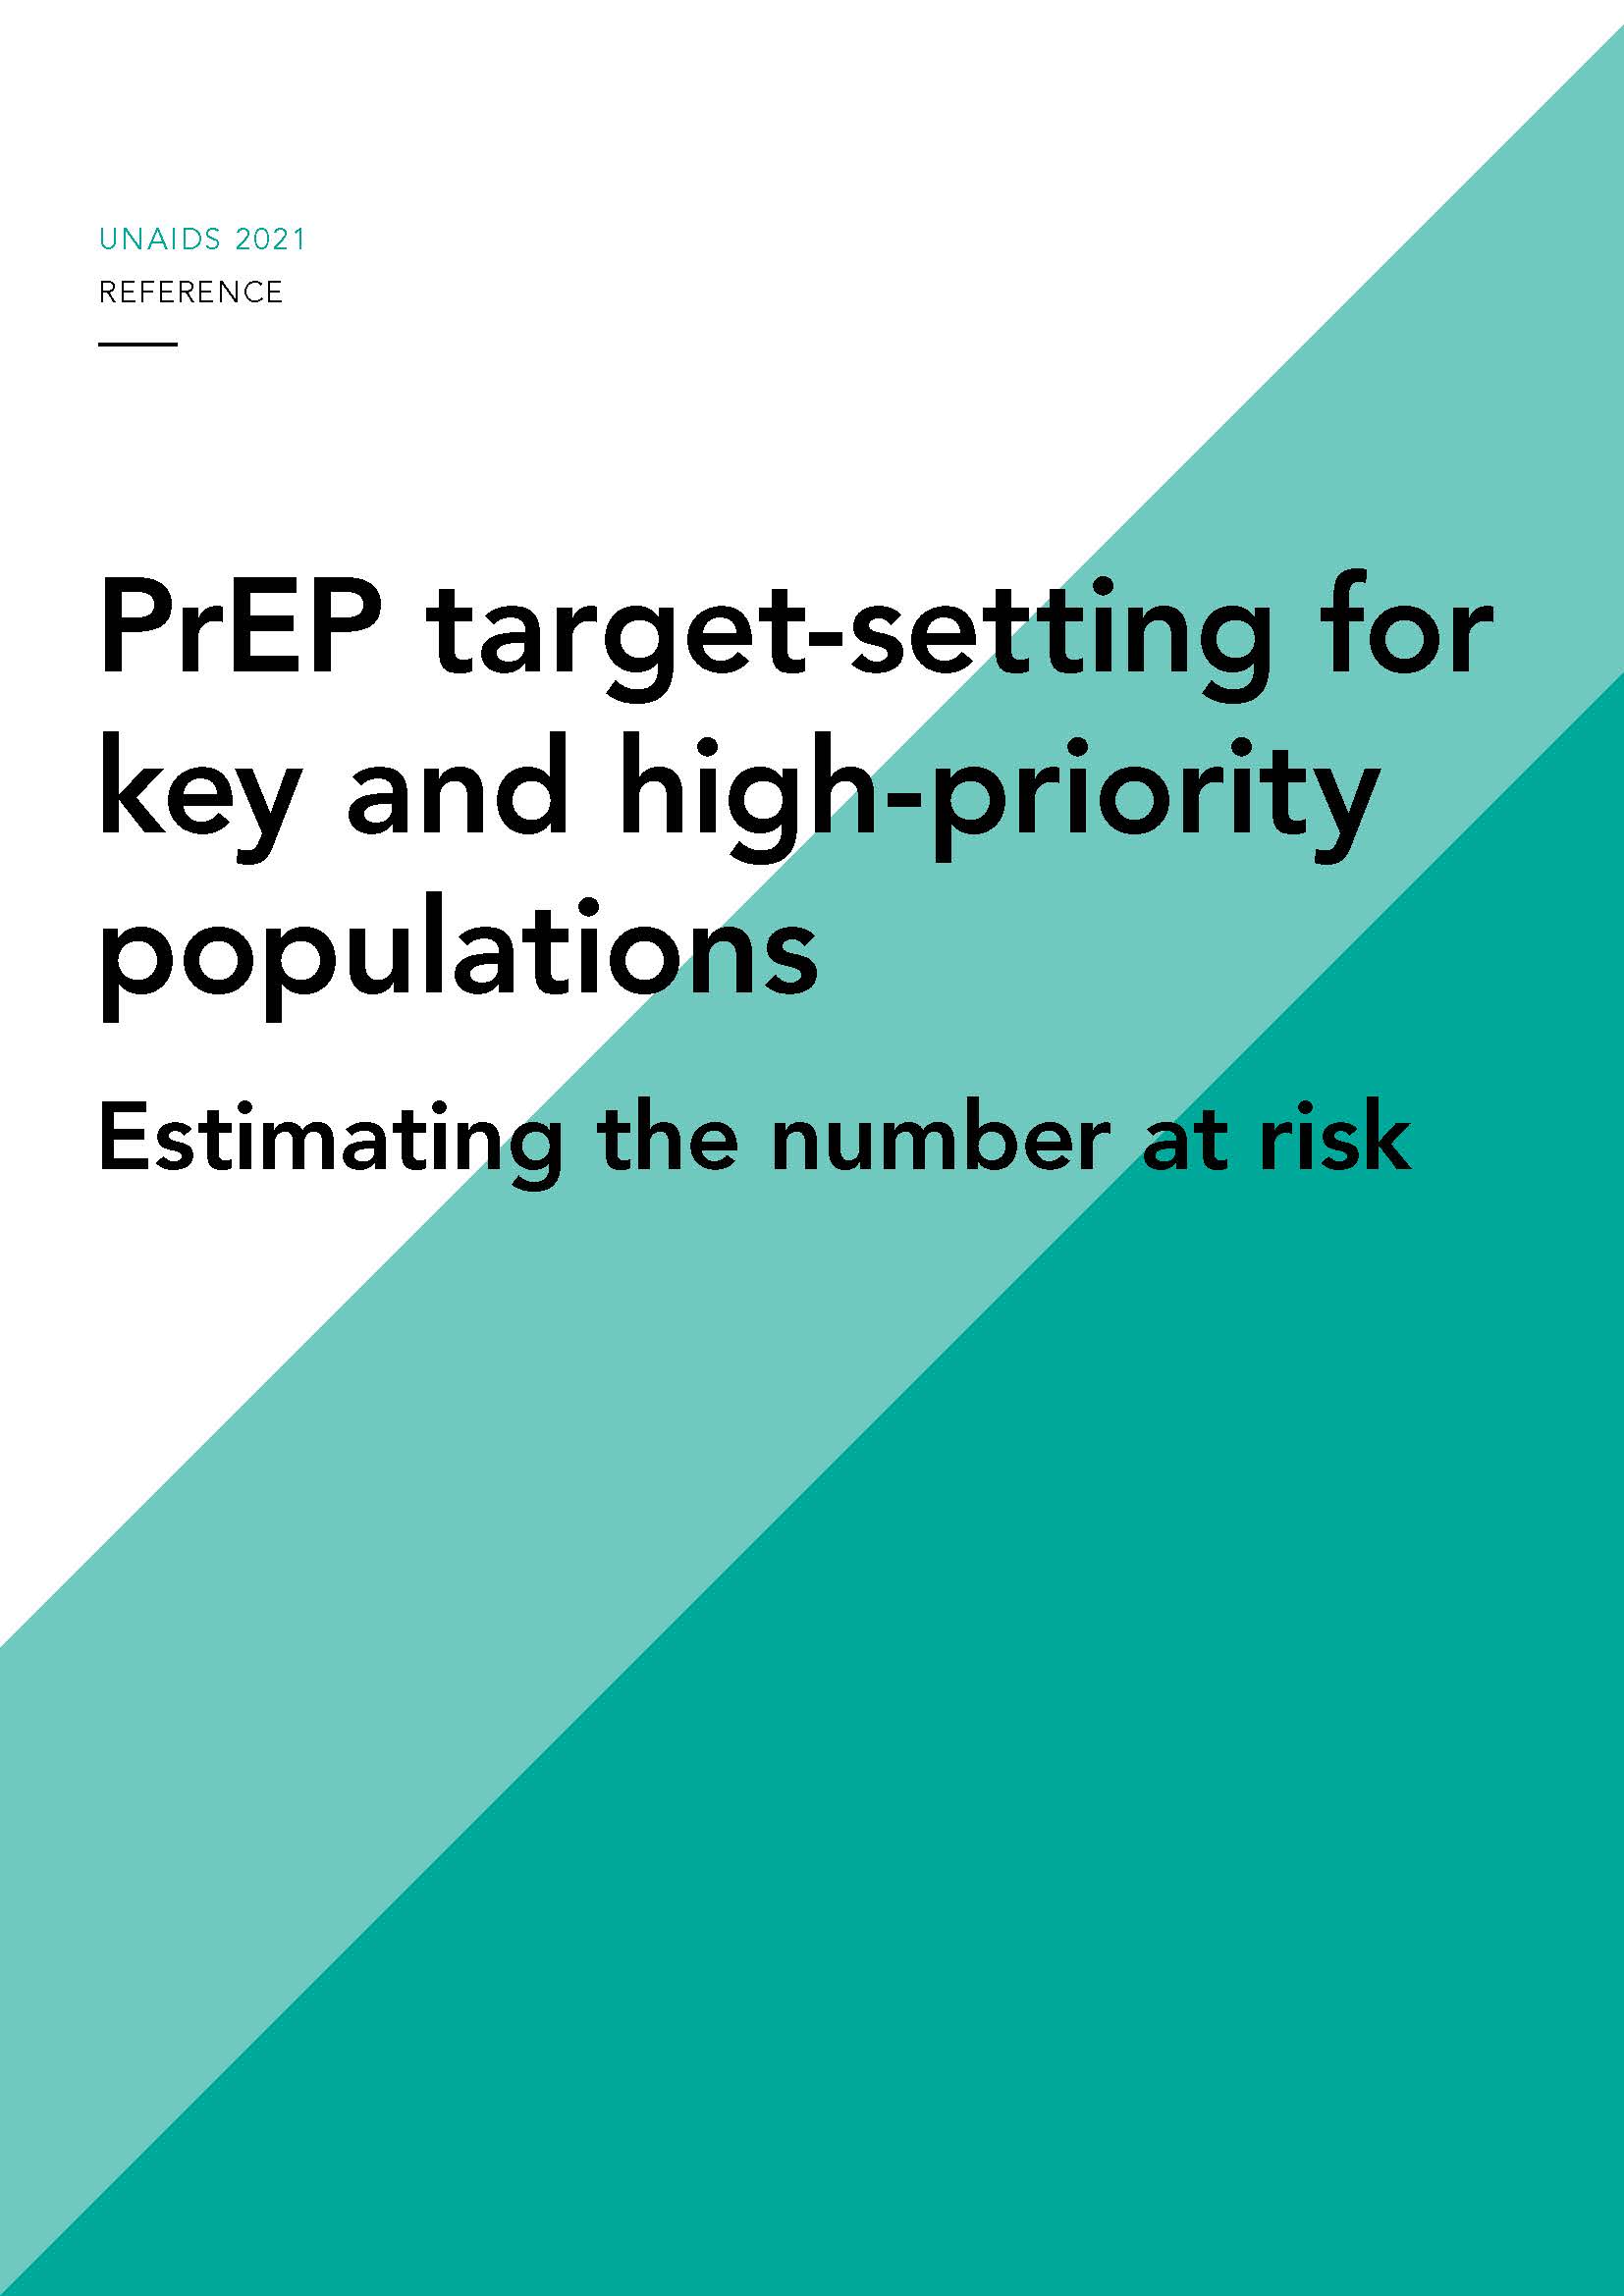 Fijación de objetivos de la PrEP:estimación del número de personas en riesgo